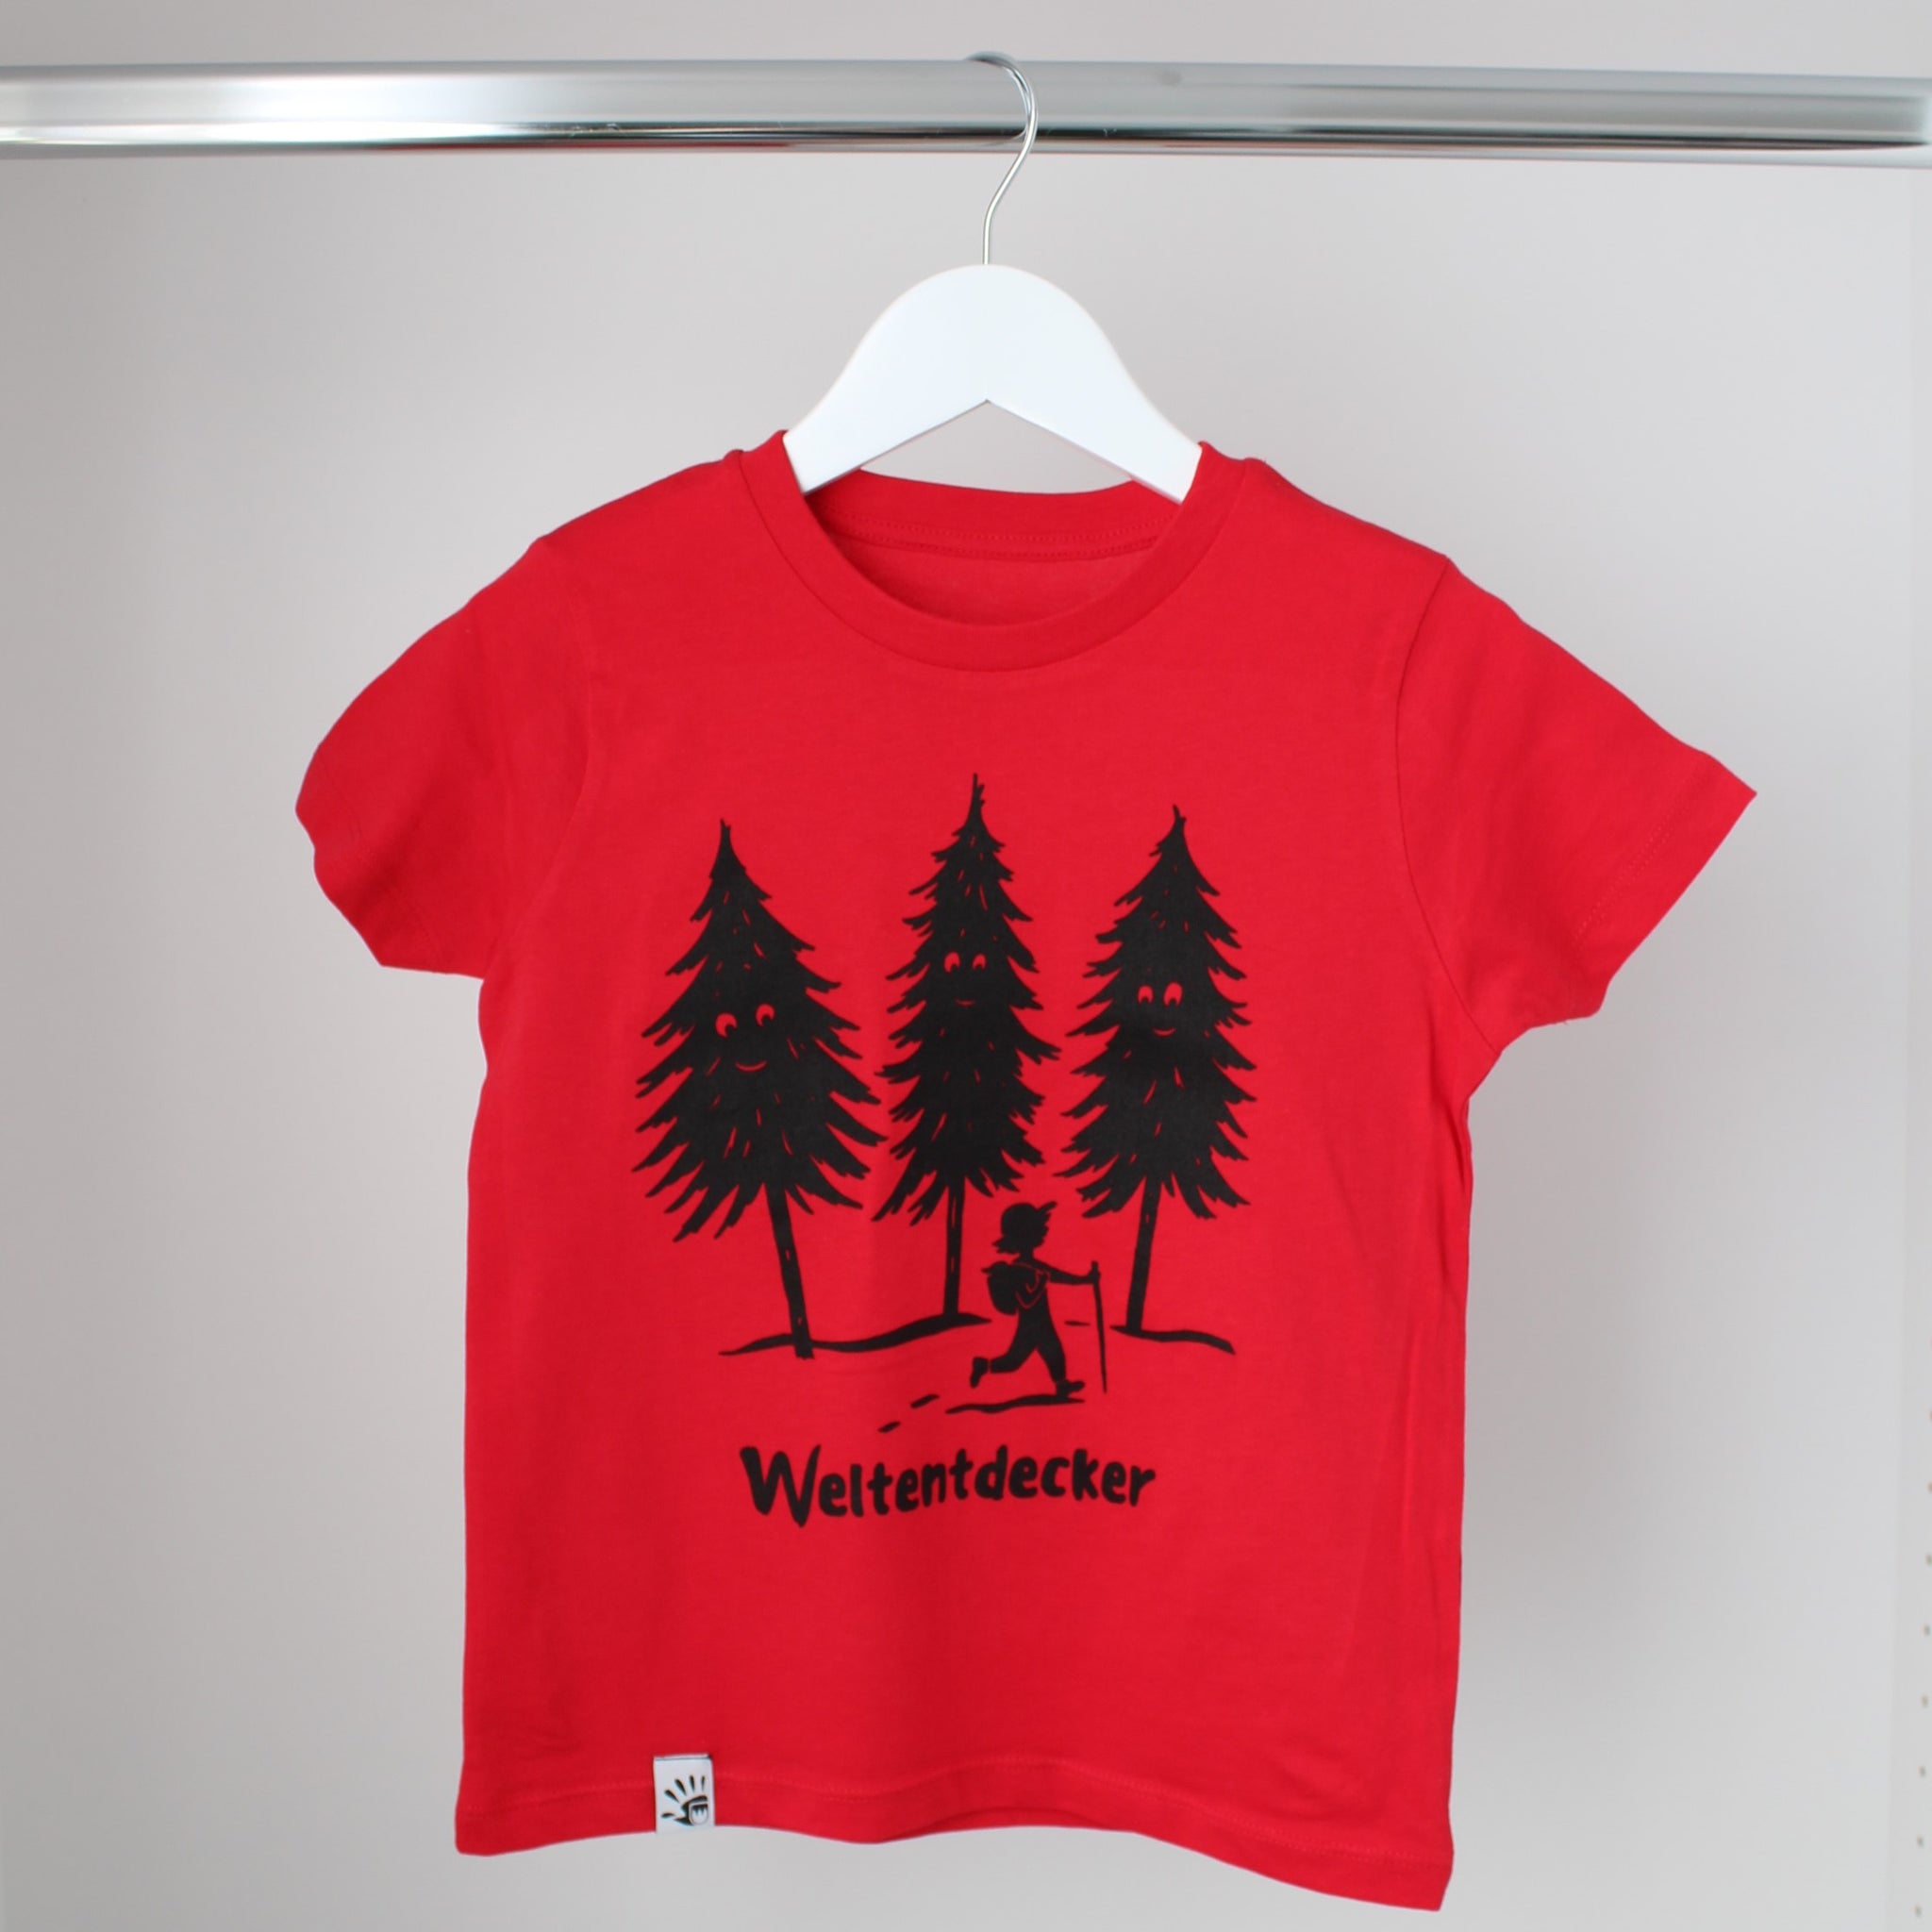 Kinder T-Shirt "Weltentdecker" - rot